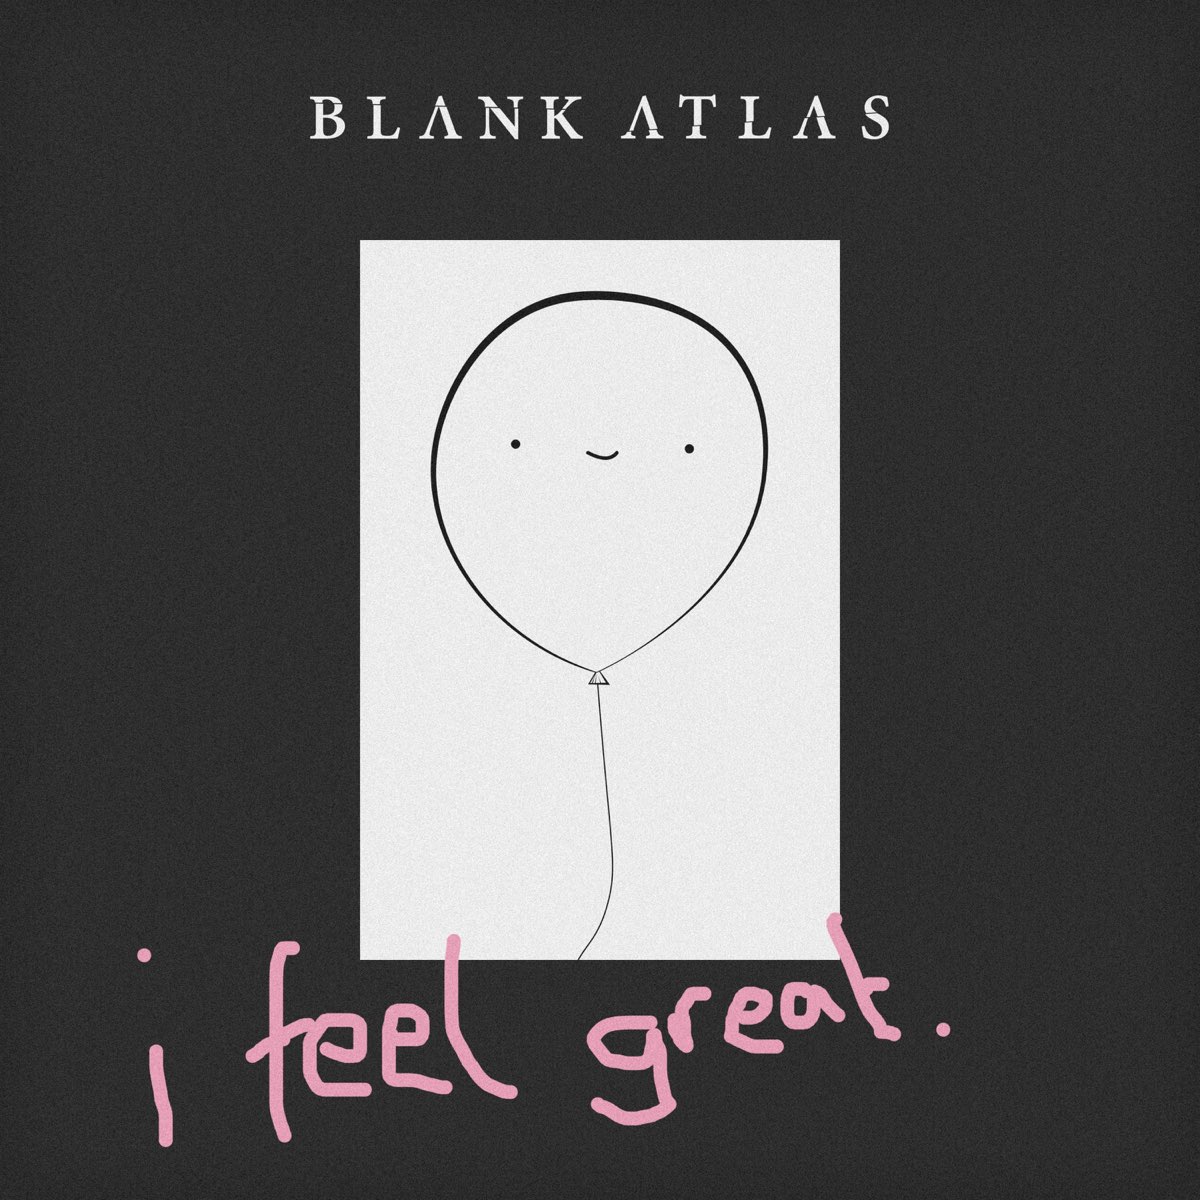 Blank Atlas. I feel great.